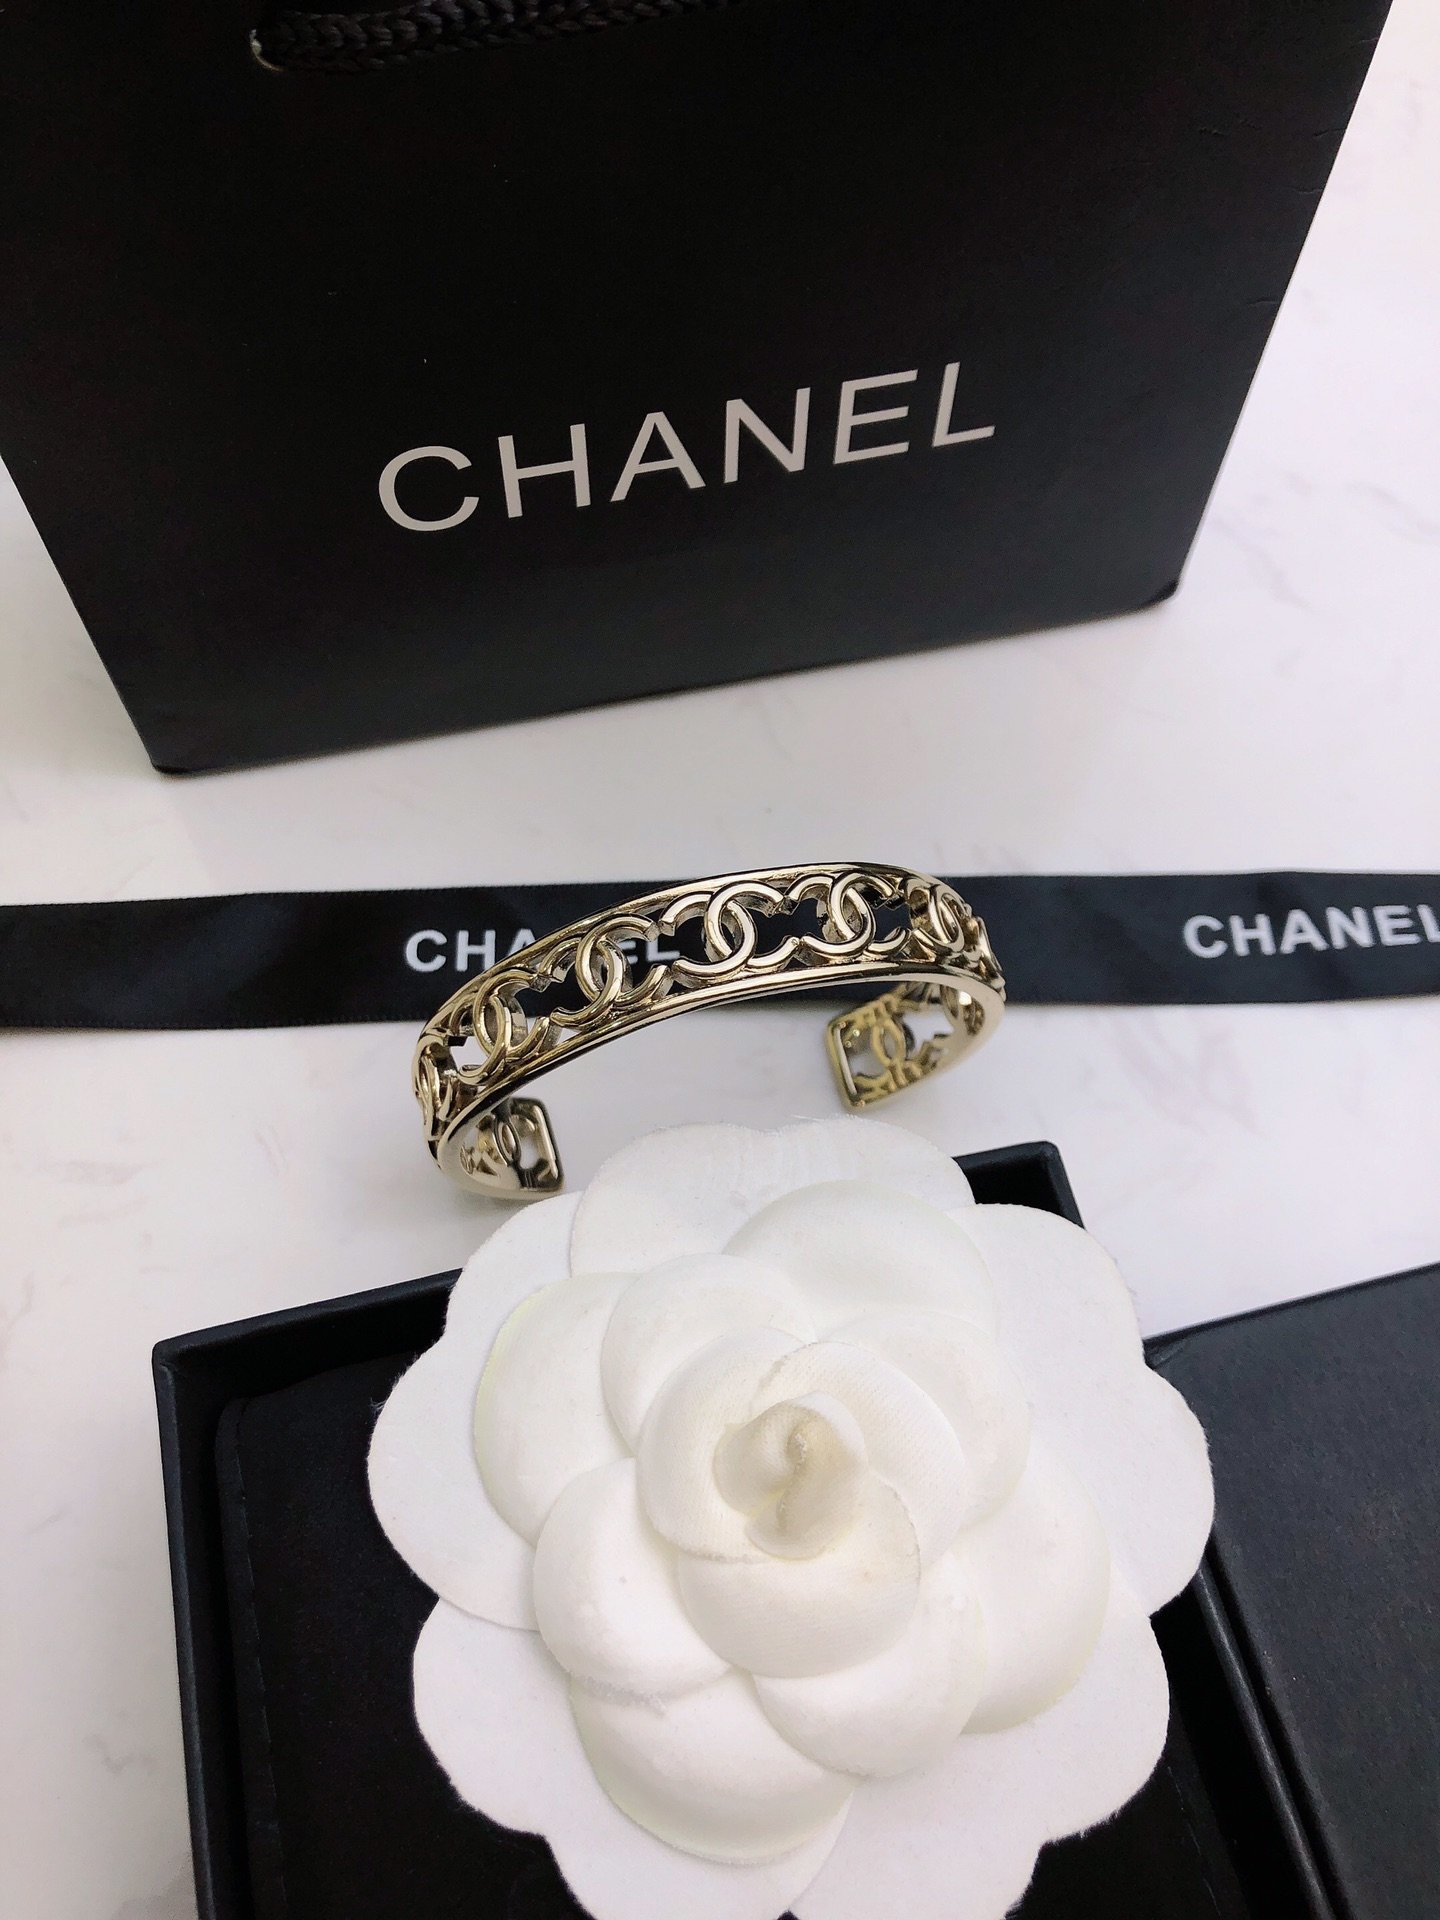 香奈儿新款手镯简约设计轮廓造型突出镂空镀金Chanel最强助攻单搭或者混搭都能让人一见倾心分分钟变身时尚